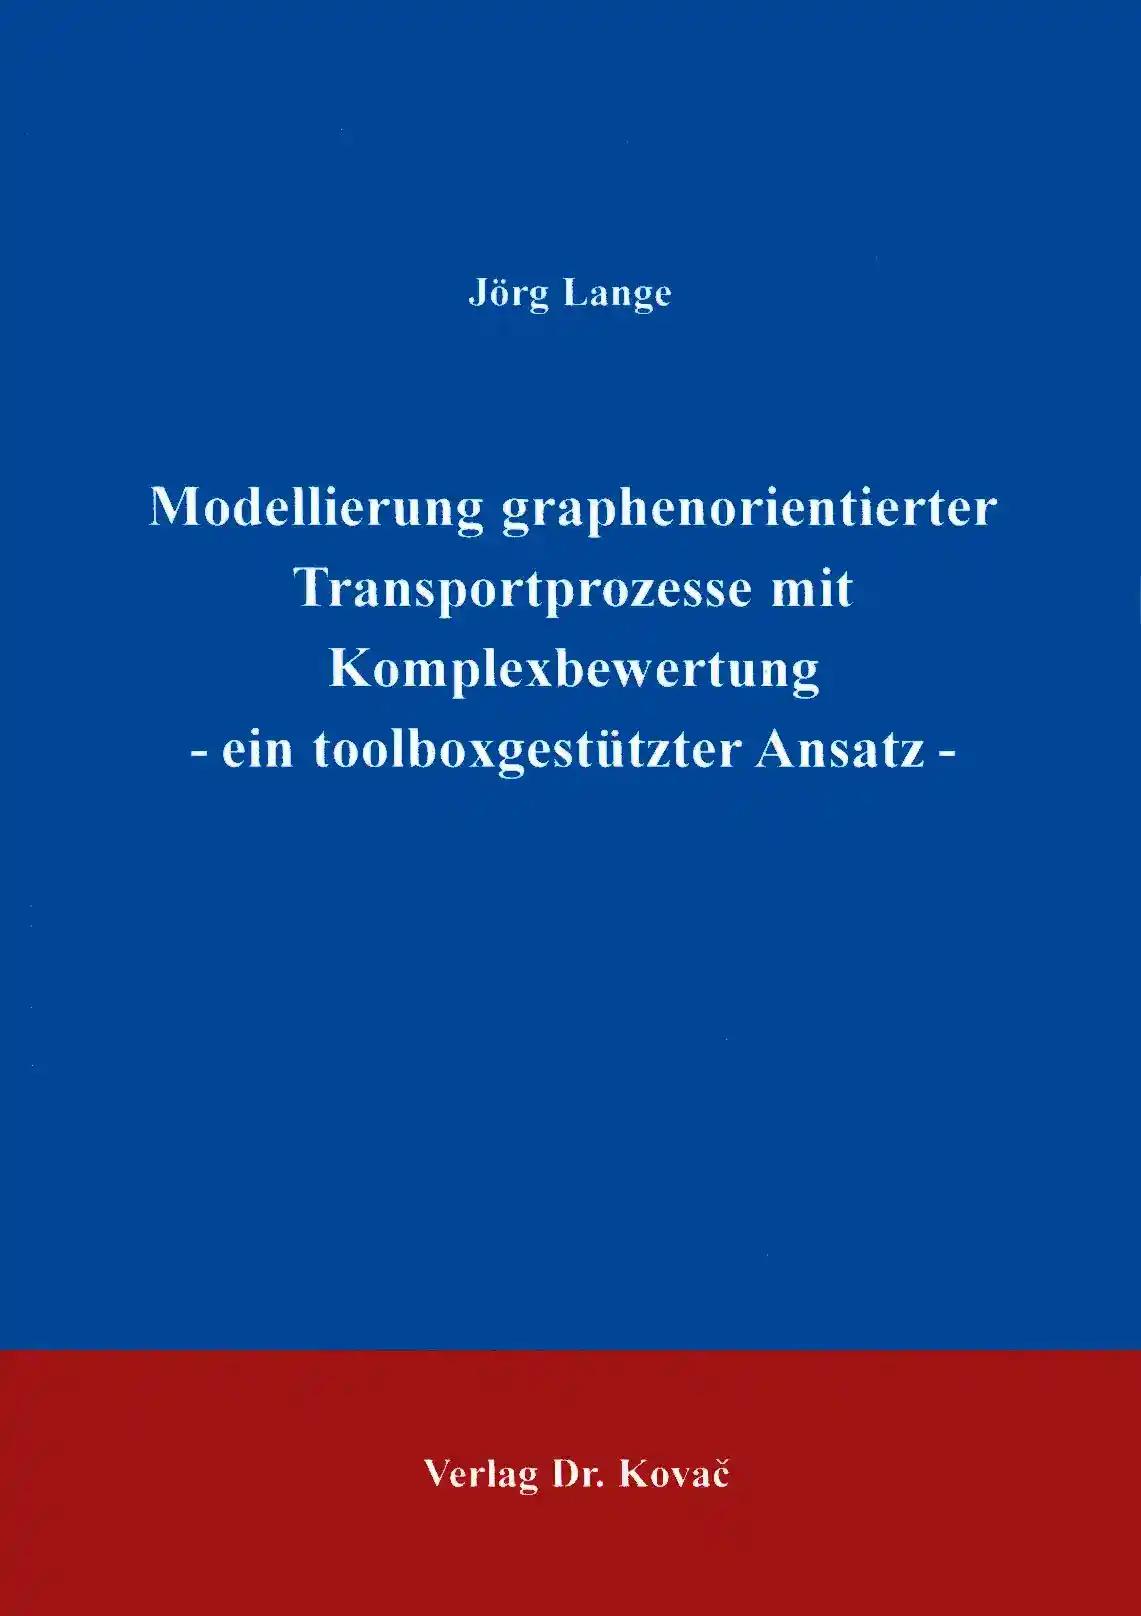 Modellierung graphenorientierter Transportprozesse mit Komplexbewertung, ein tallboxgestützter Ansatz - Jörg Lange